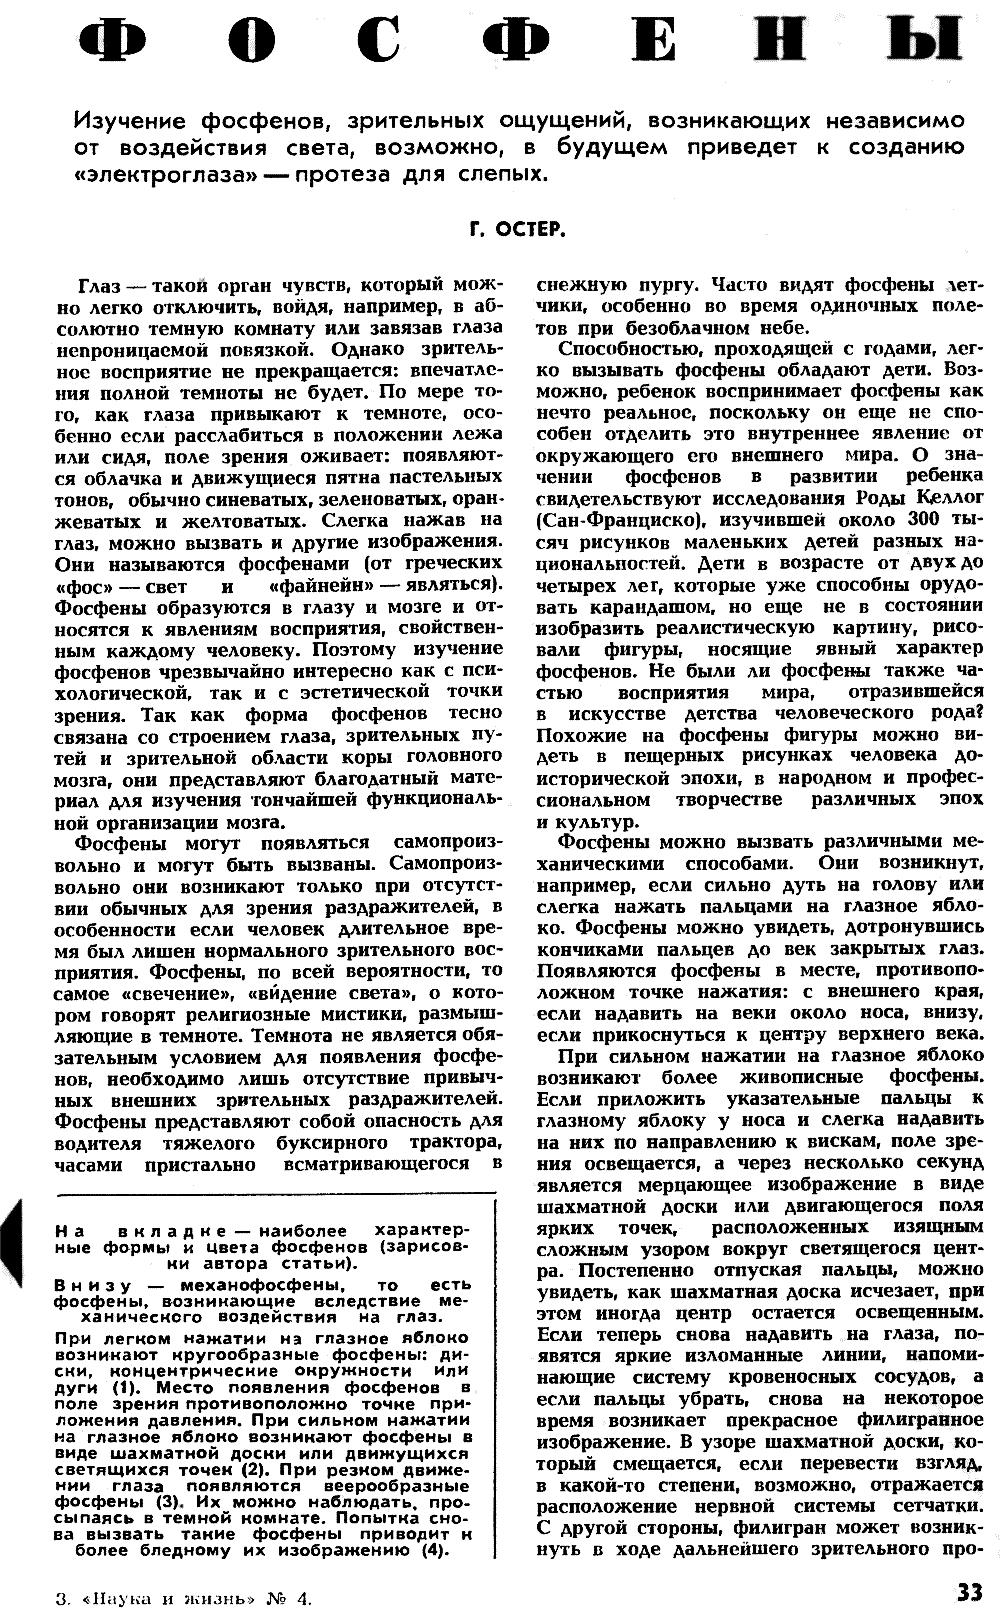 Фосфены. Г. Остер. Наука и жизнь, 1971, №4, с.33-37 (вкладка). Фотокопия №2